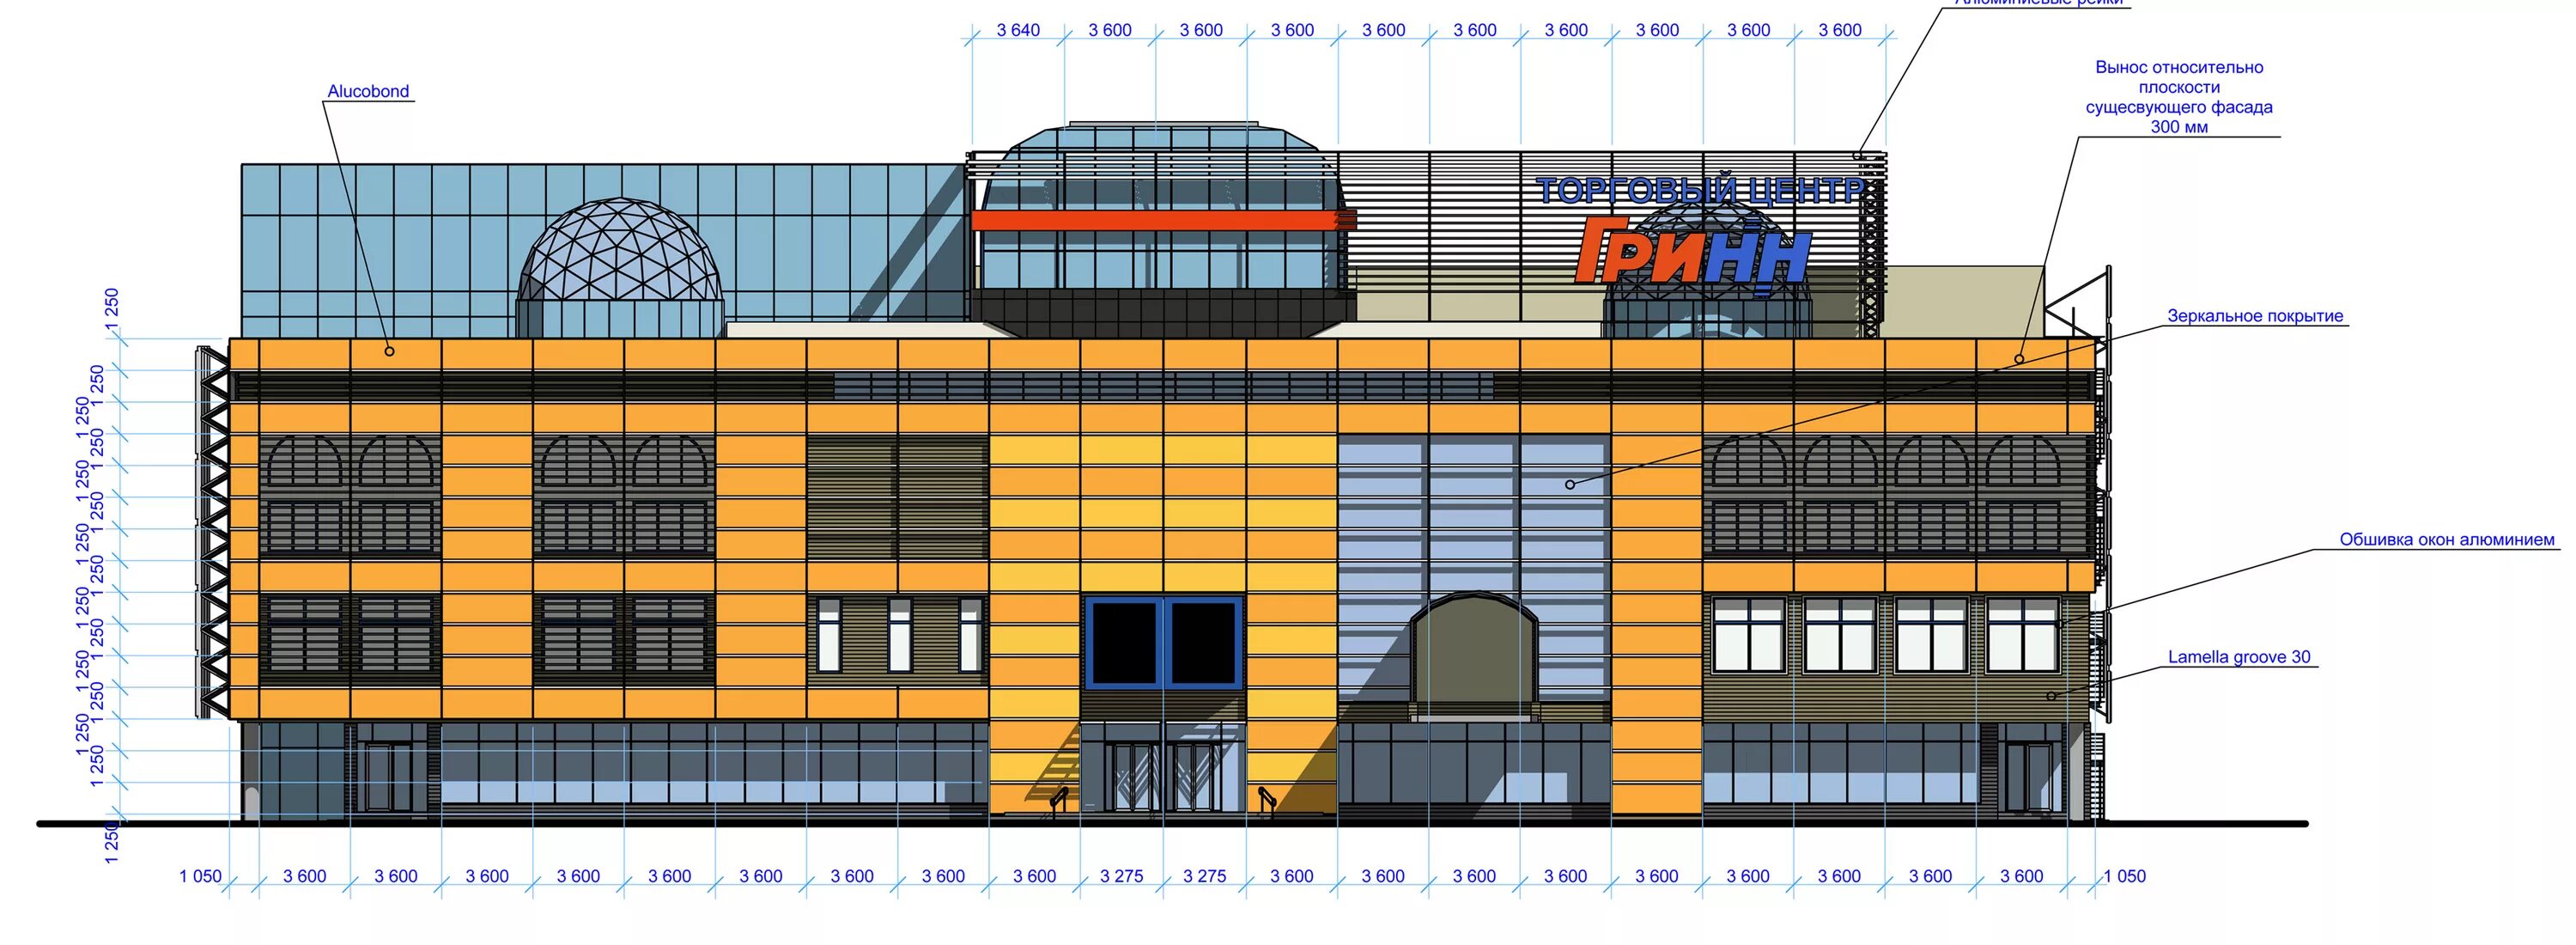 Реконструкция тц. Анализ фасадов зданий. Фасады существующих кинотеатров. Как показать на фасаде часть существующего здания. Пример реконструкции торговых комплексов.